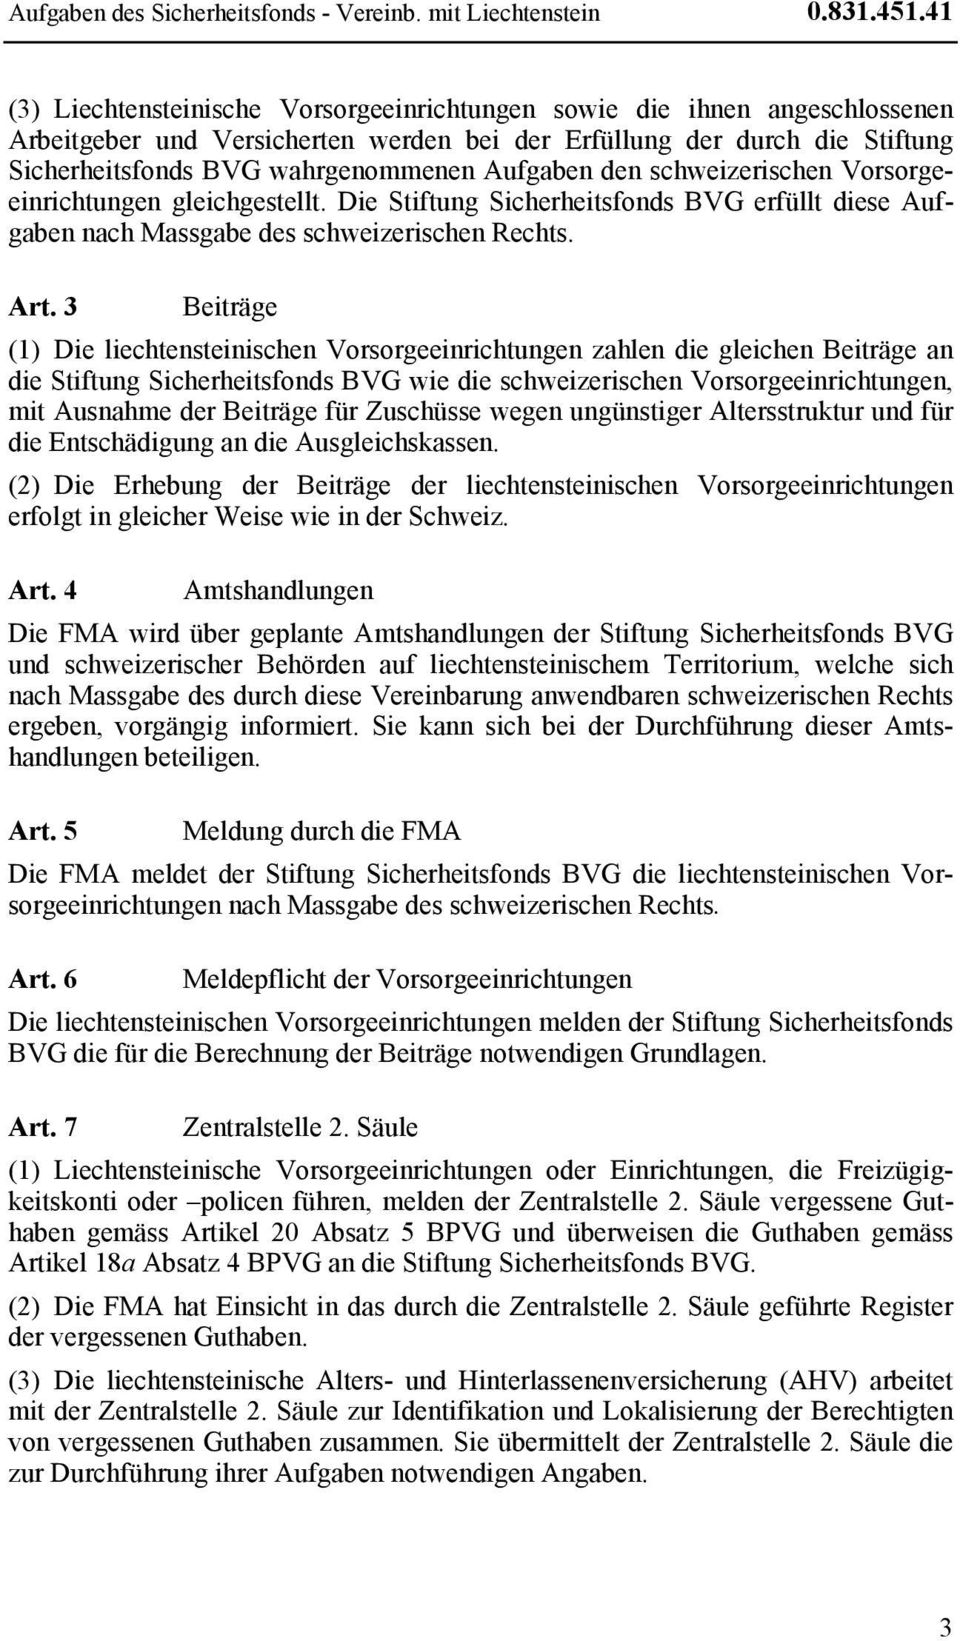 Aufgaben den schweizerischen Vorsorgeeinrichtungen gleichgestellt. Die Stiftung Sicherheitsfonds BVG erfüllt diese Aufgaben nach Massgabe des schweizerischen Rechts. Art.